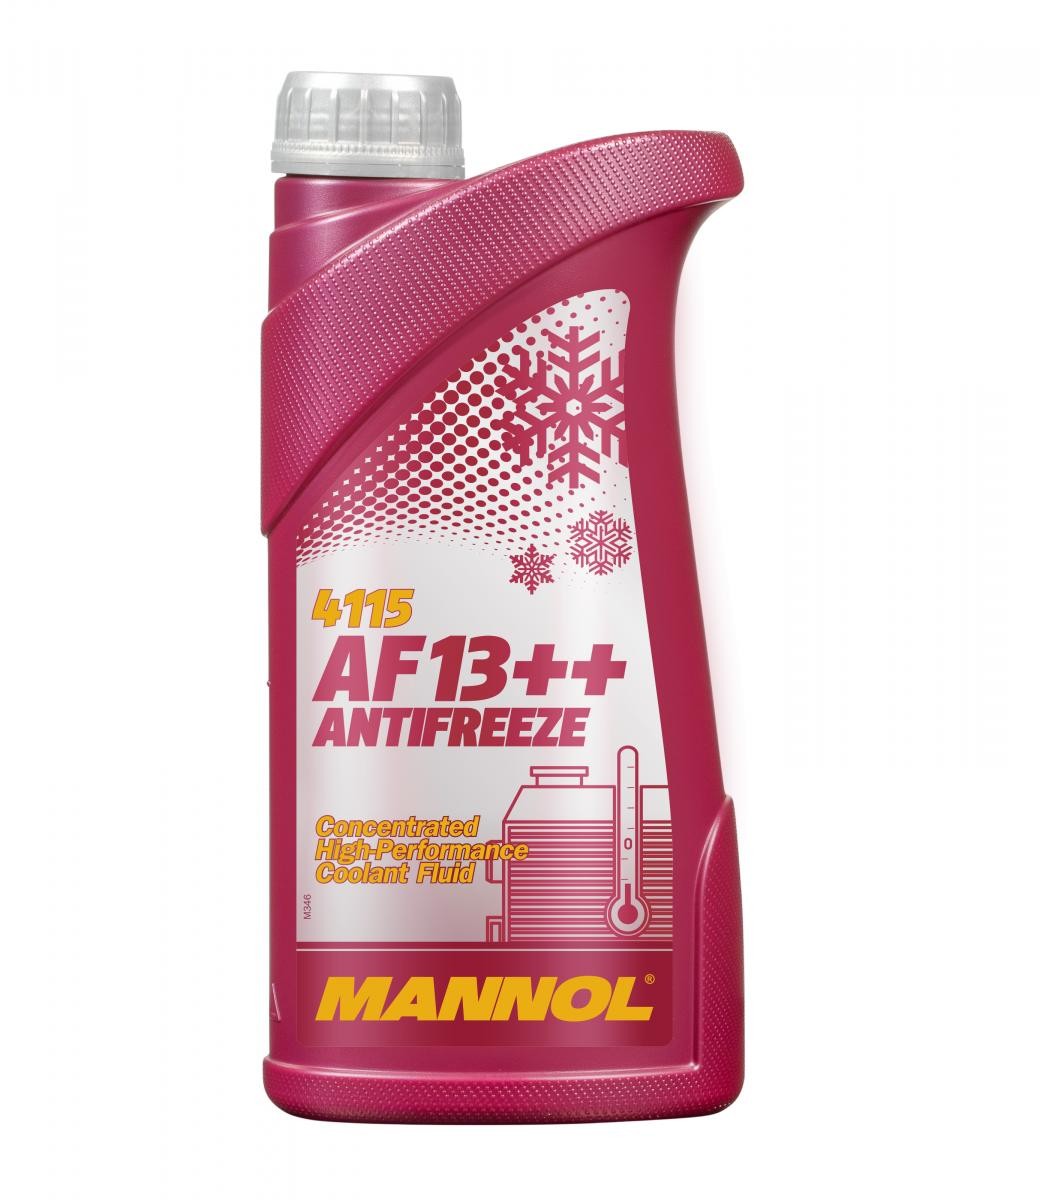 MVK BRX Kühlmittel G12 Rot, 1l, -38(50/50) MANNOL AF13++, High-performance MN4115-1